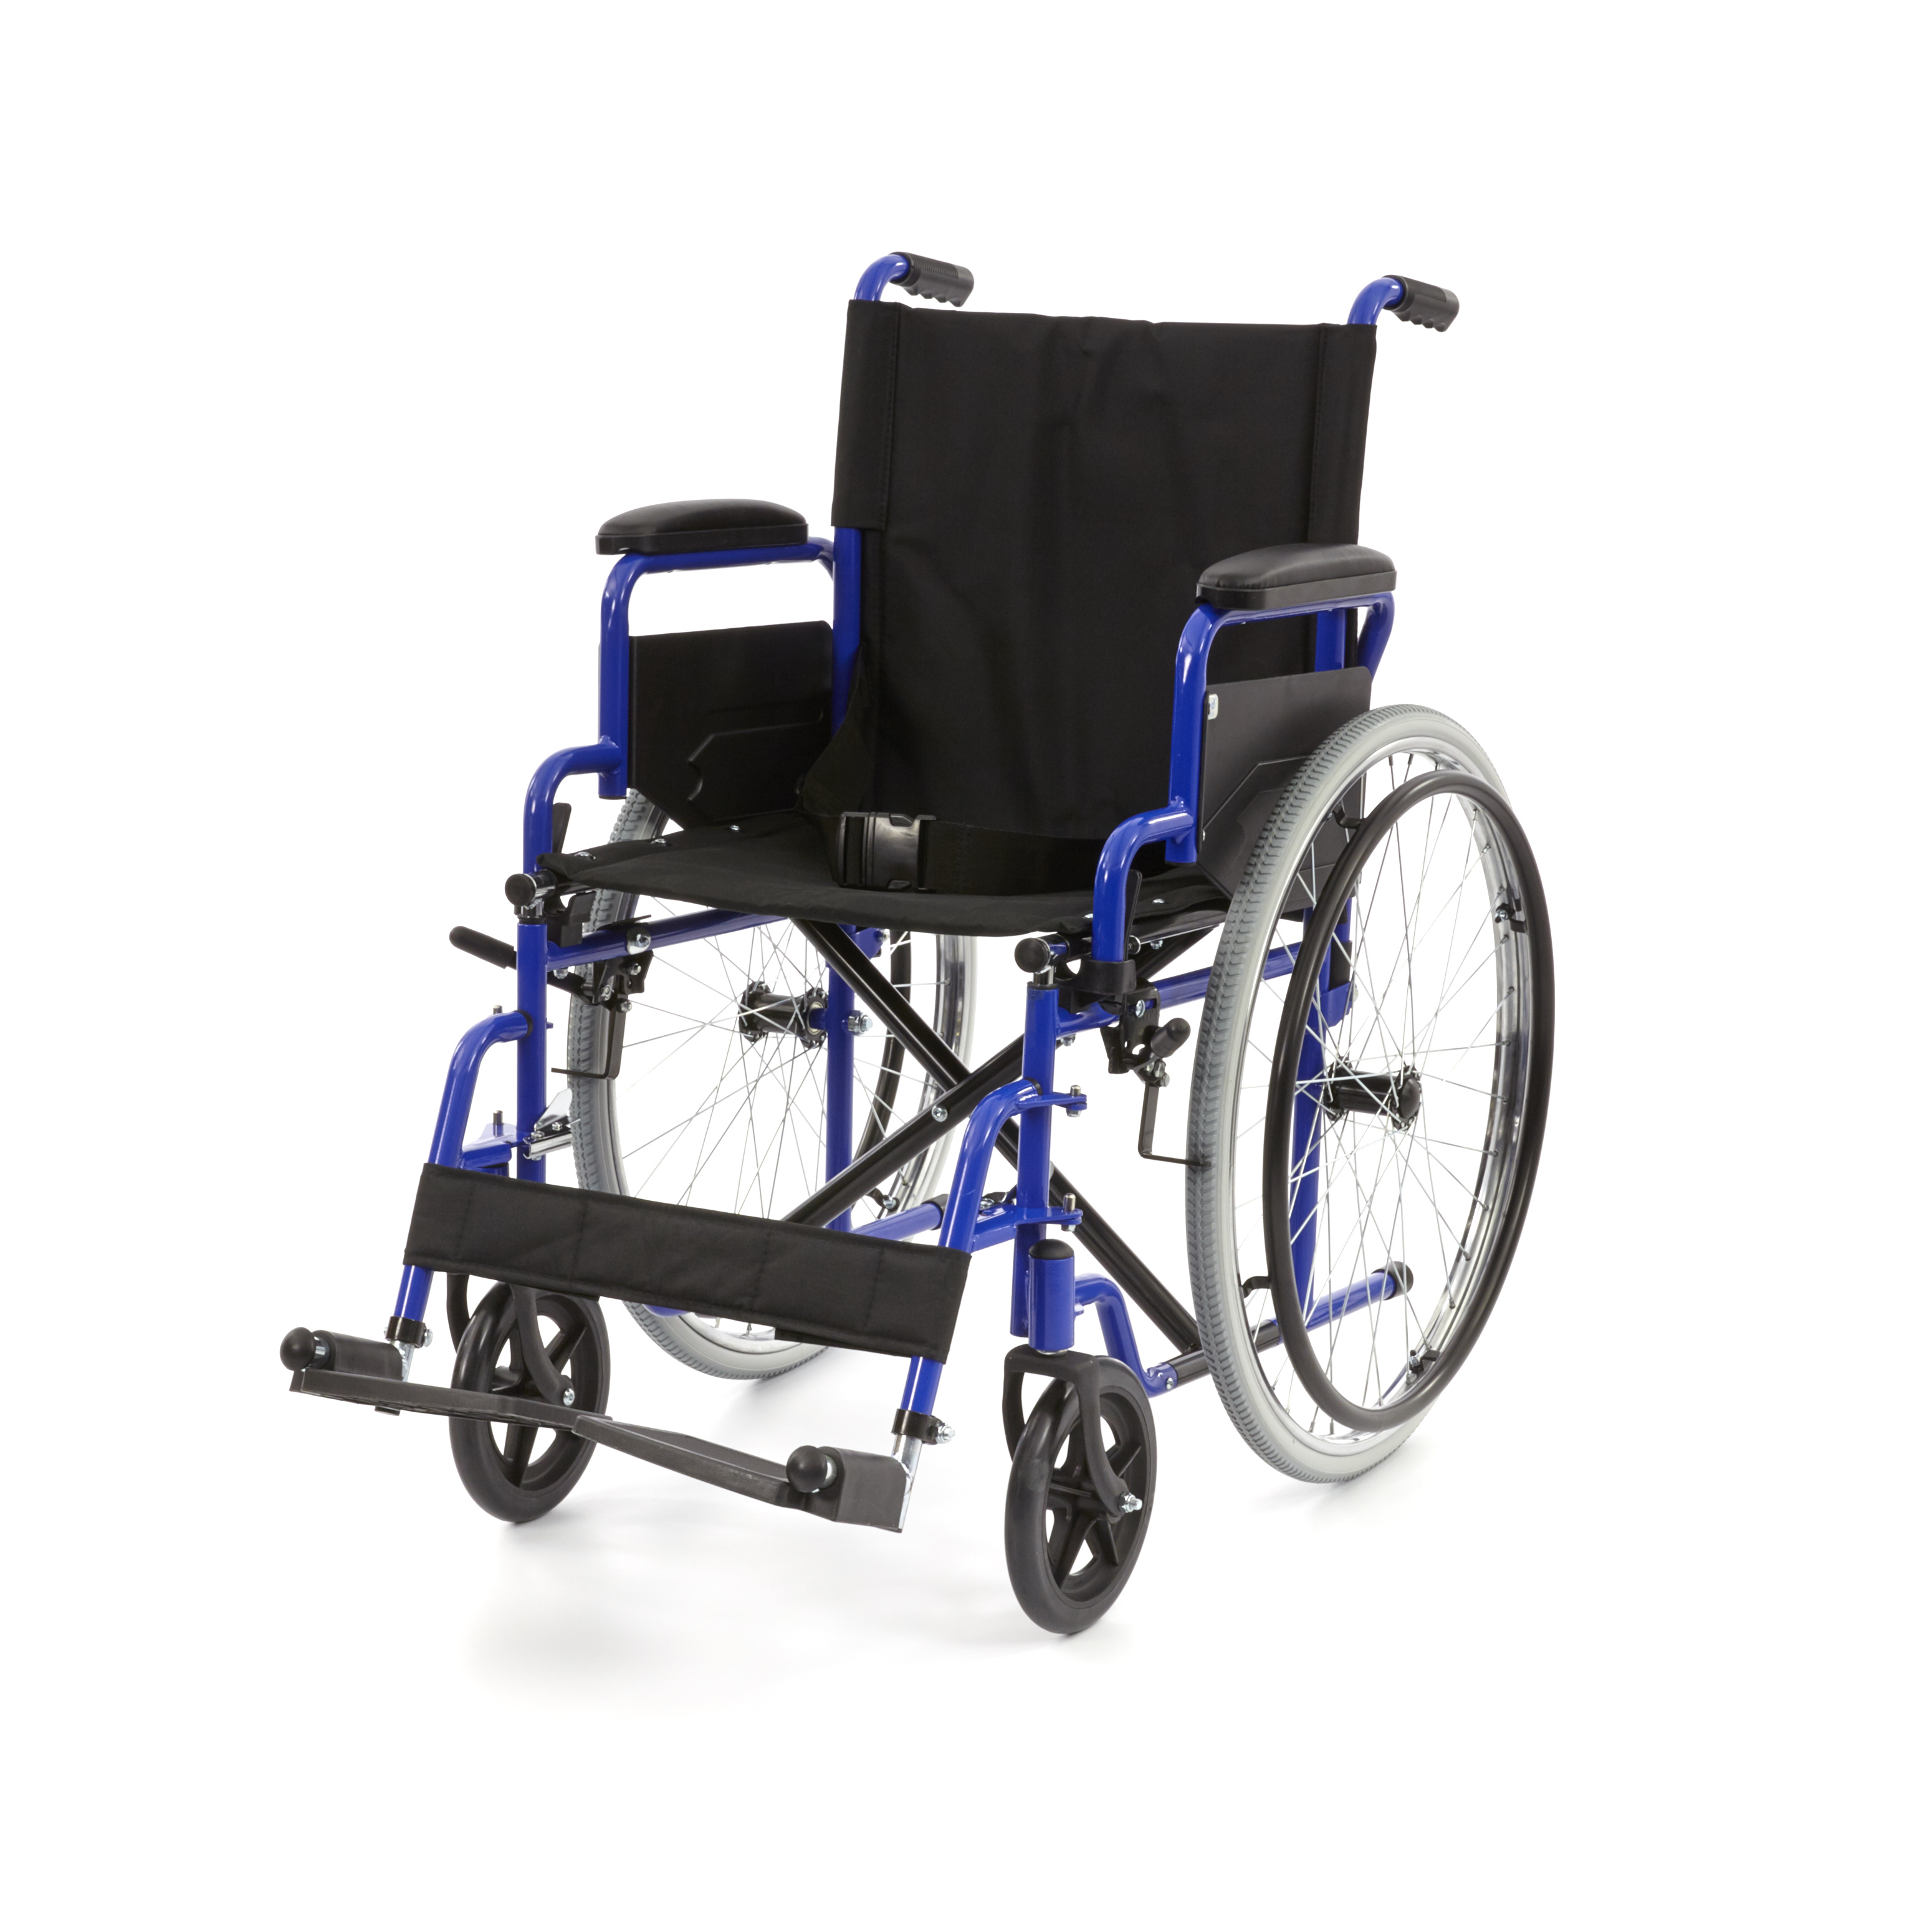 WHE-01-BLUE Silla de ruedas manual plegable Romed, azul, con reposabrazos abatible y reposapiés girable, por unidad en una caja de cartón.